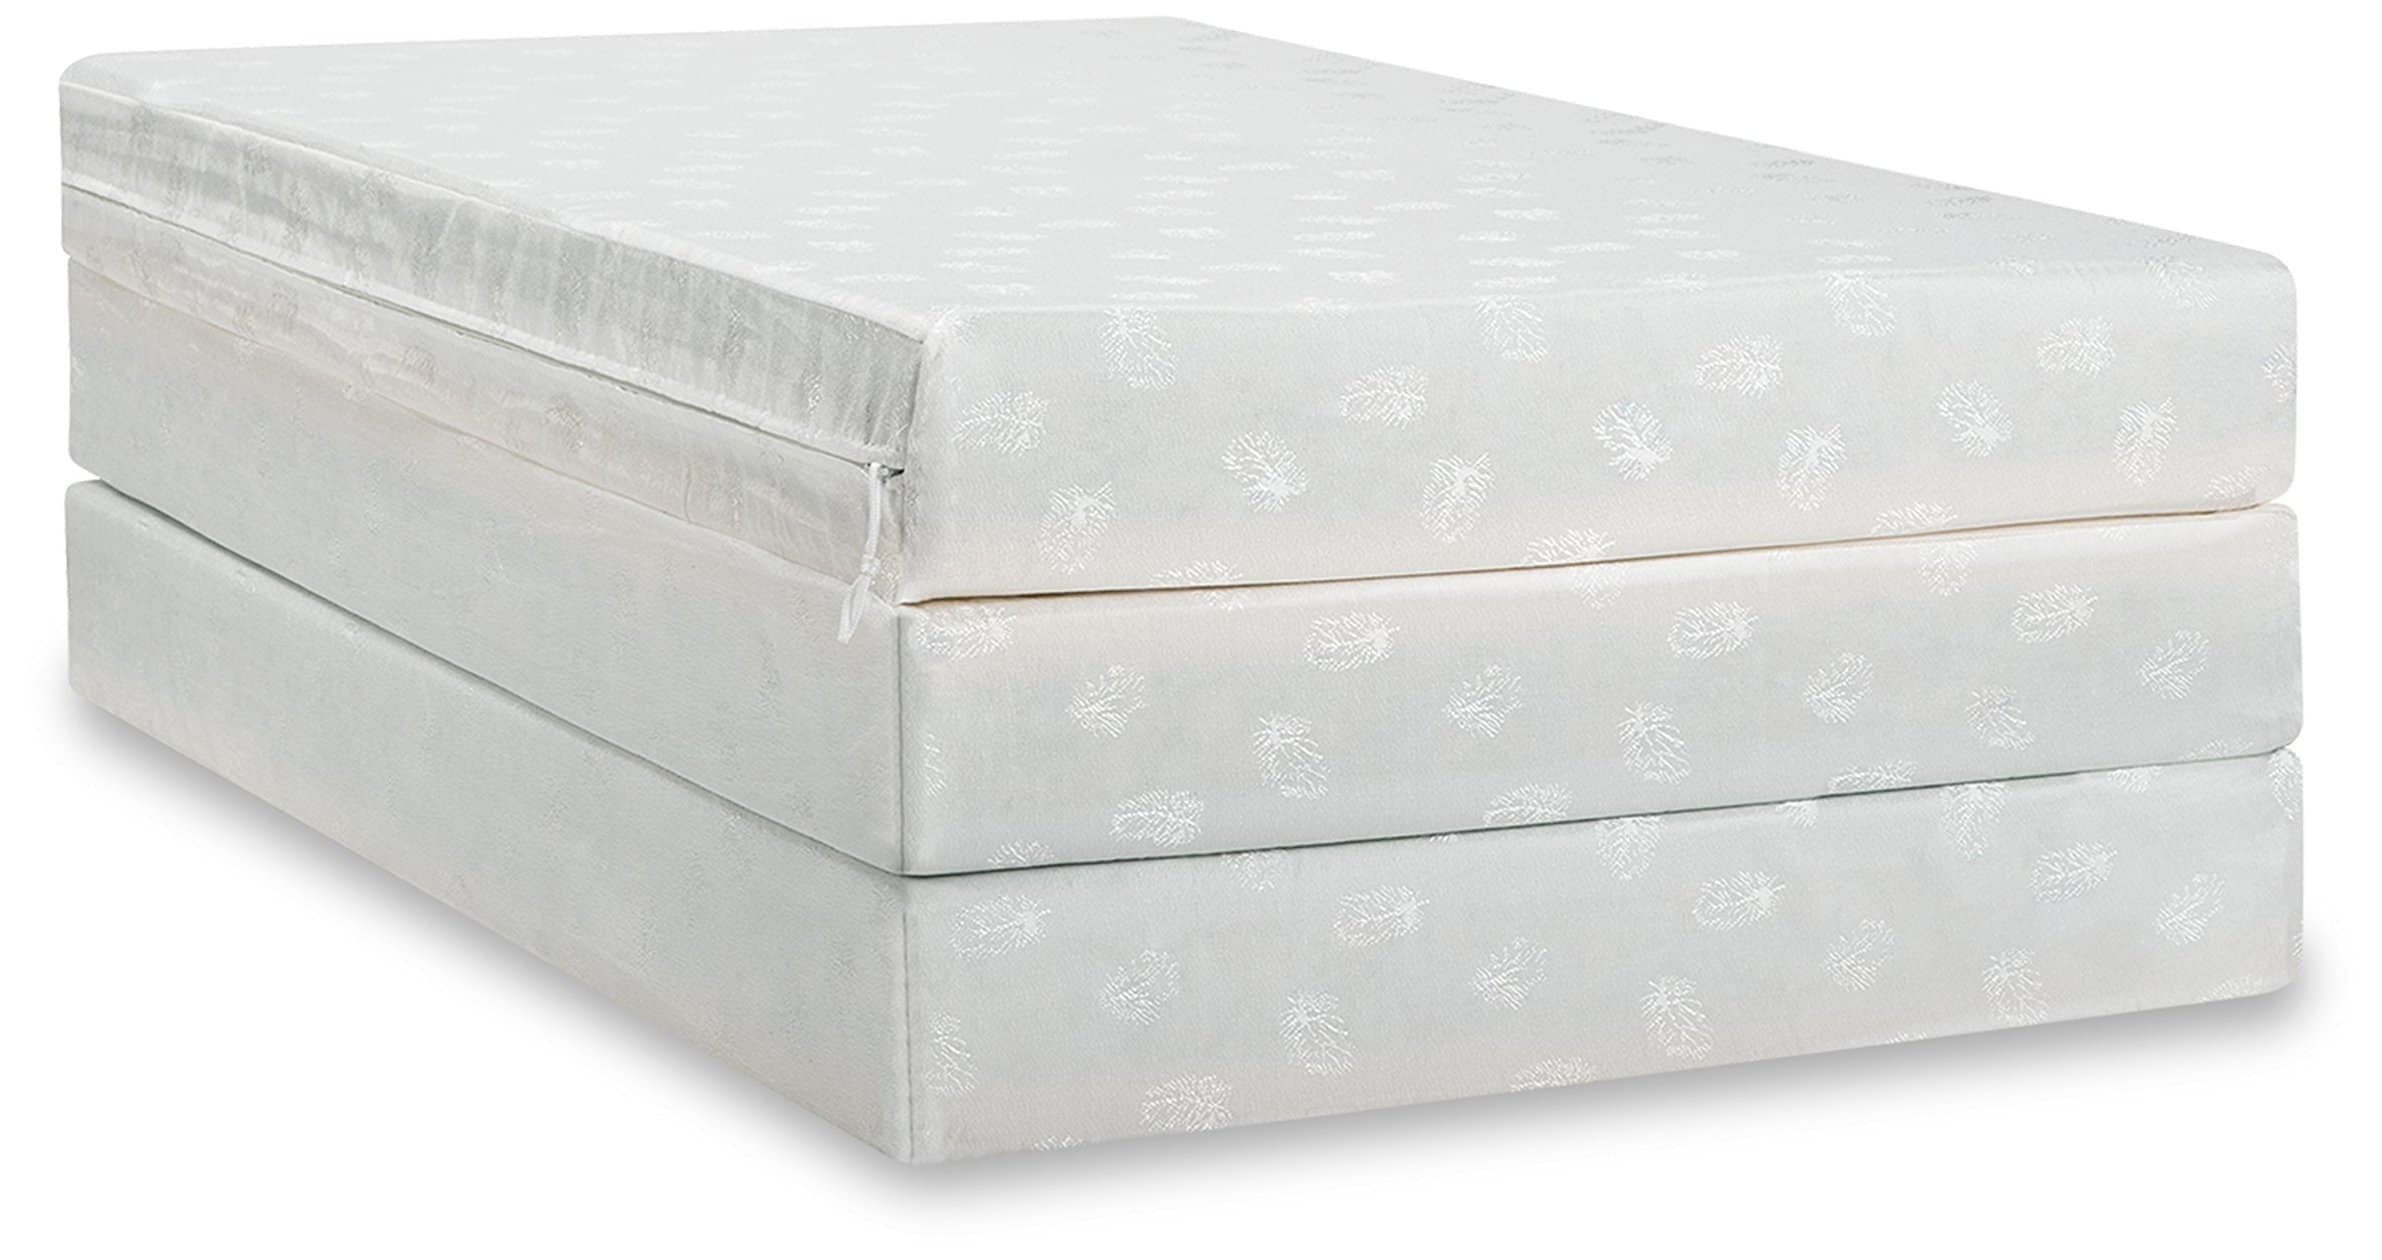 fold out sleeping mattress